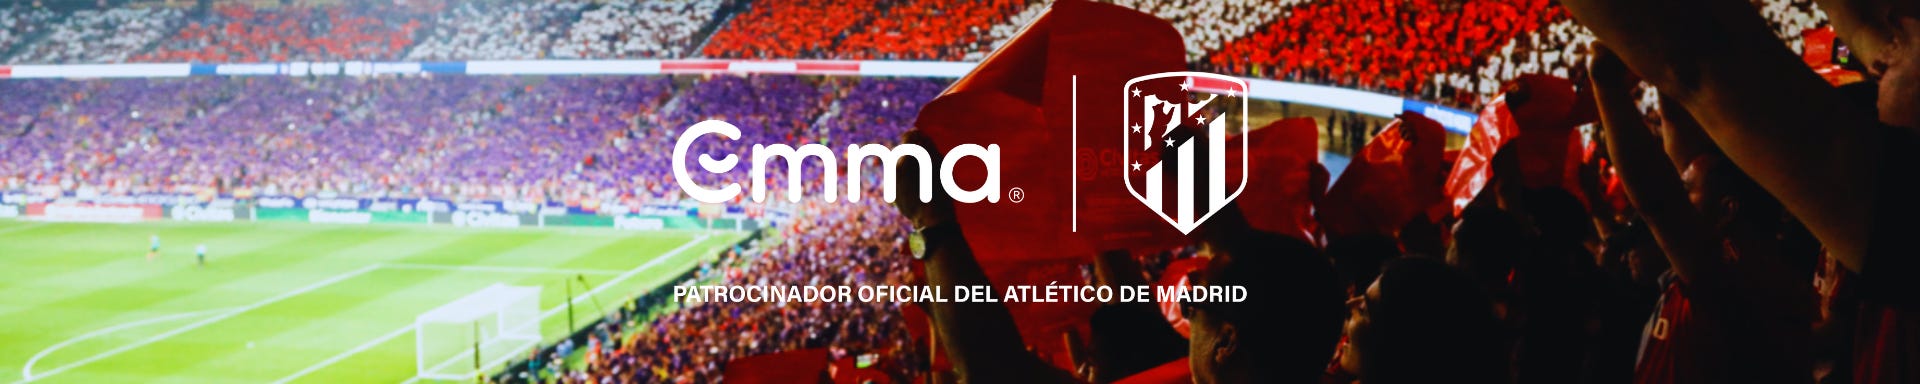 Patrocinio oficial de emma con el atlético de madrid, logos sobre el estadio